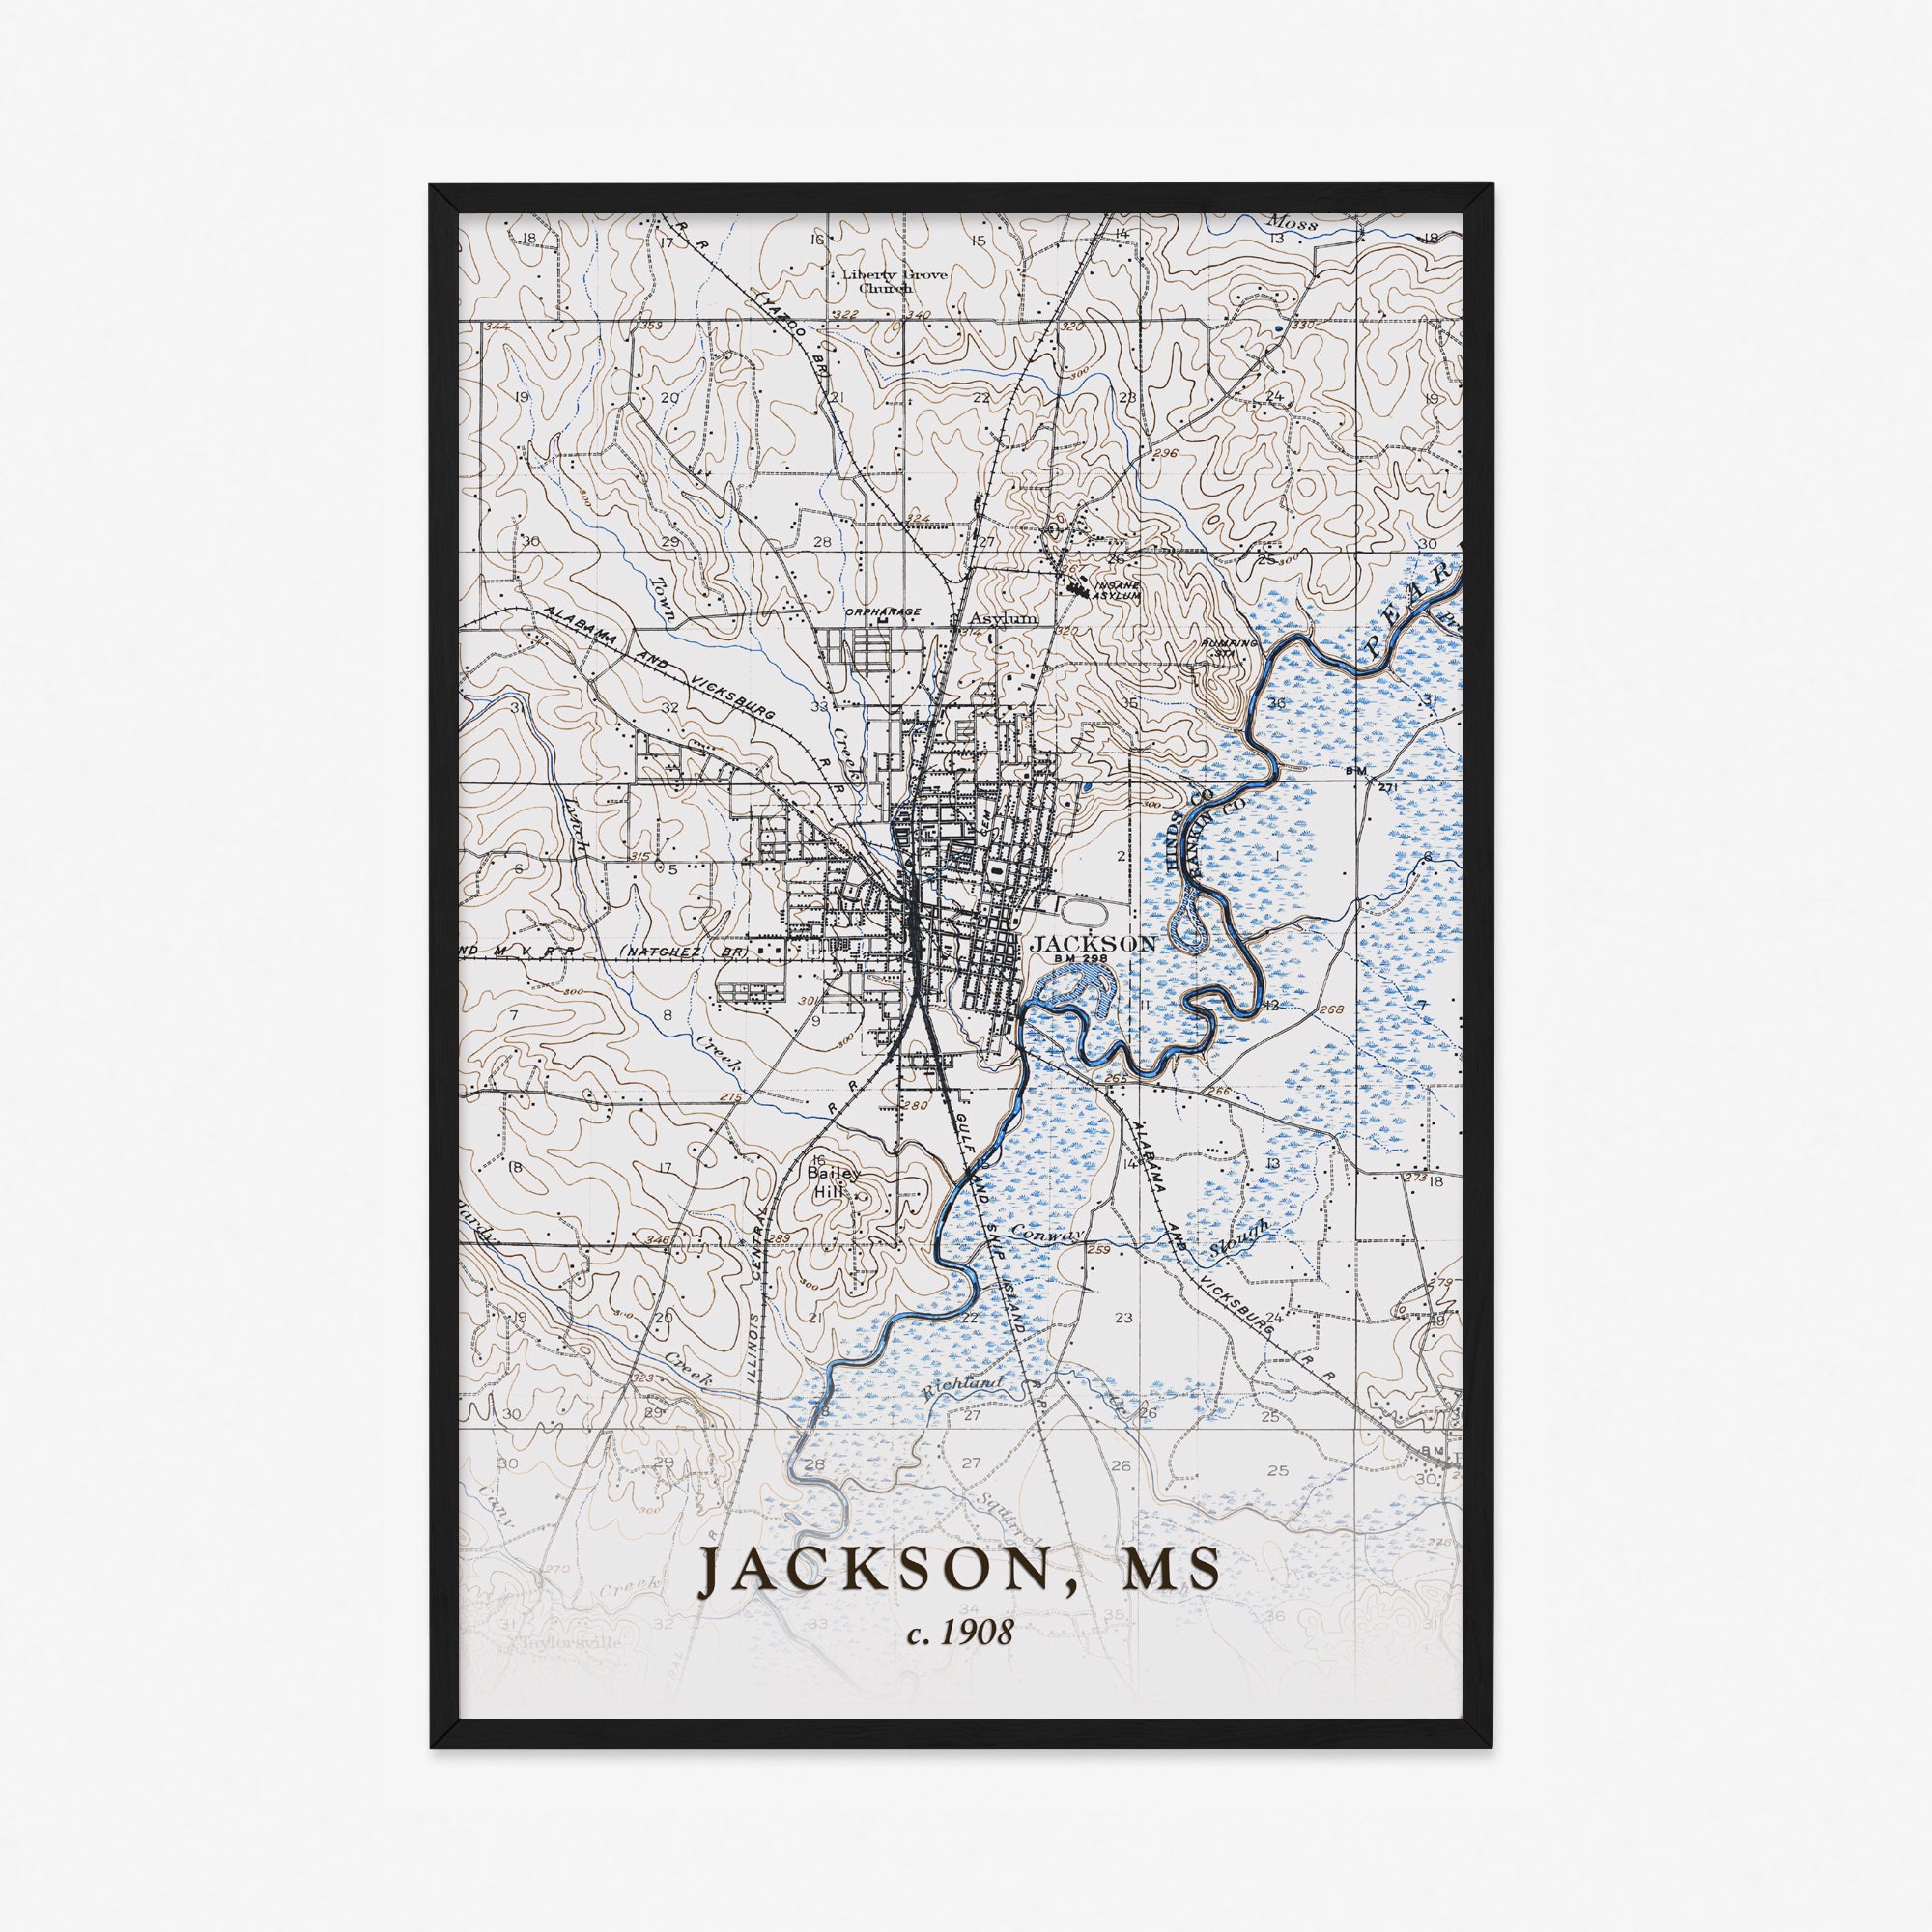 Jackson, MS - 1908 Topographic Map